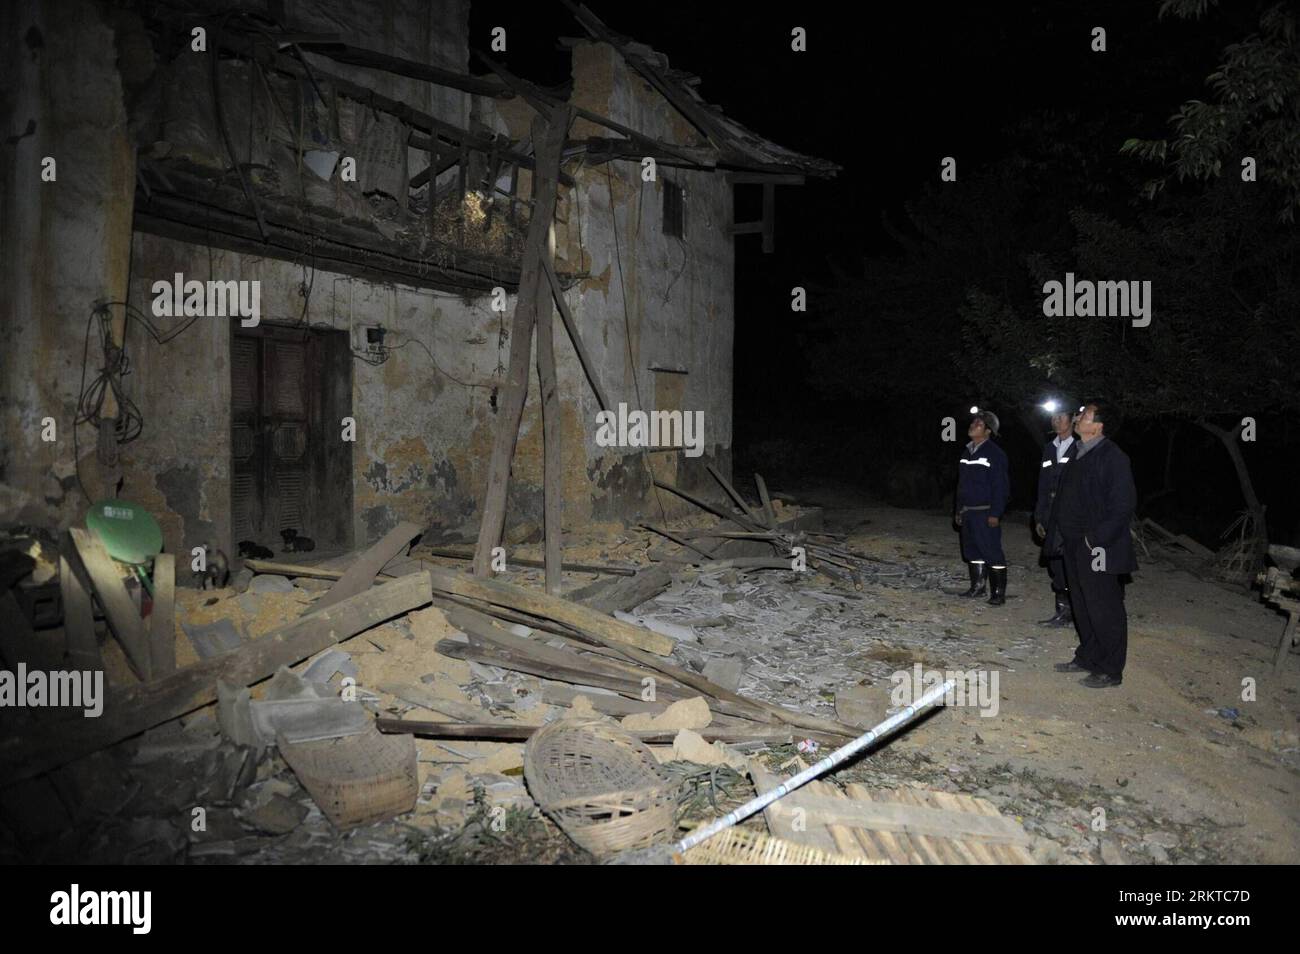 Bildnummer: 58444235 Datum: 08.09.2012 Copyright: imago/Xinhua (120908) -- WEINING, 8 settembre 2012 (Xinhua) -- i soccorritori controllano una casa gravemente danneggiata dai terremoti al villaggio di Jianjiao nella contea di Weining, nella provincia di Guizhou nella Cina sud-occidentale, 8 settembre 2012. Due terremoti che misurano più di 5 hanno colpito la vicina contea di Yiliang nella provincia dello Yunnan della Cina sud-occidentale venerdì. La contea di Weining ha adottato misure per fornire alle vittime del terremoto materiali di soccorso, tra cui cibo, acqua e tende. (Xinhua/Ou Dongqu) (zhs) CINA-GUIZHOU-TERREMOTO-POST-MATEMATICA (CN) PUBLICATIONxNOTxINxCHN Gesellschaft Erdbeb Foto Stock